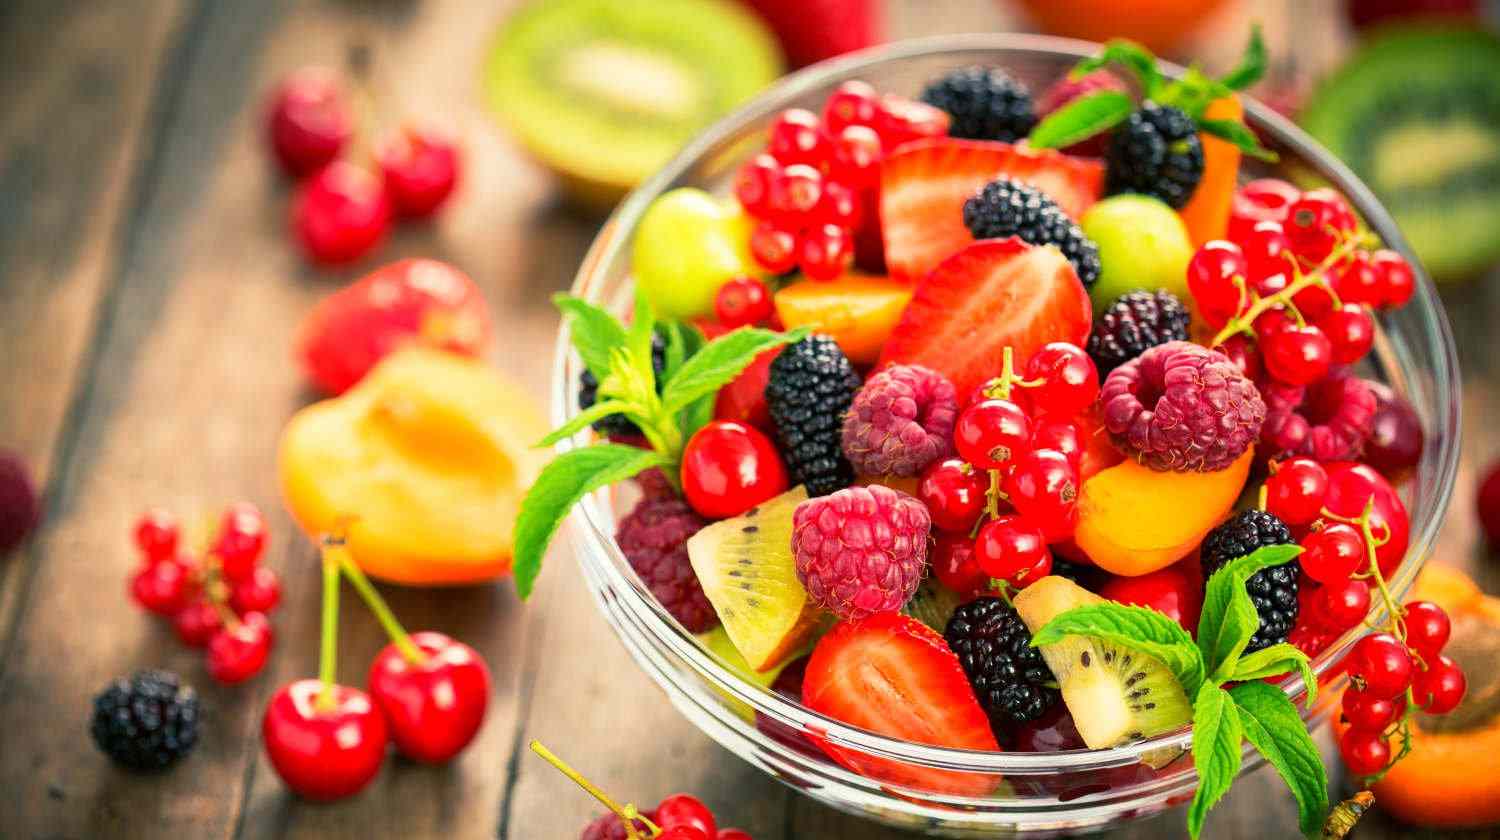 Kirschen kcal 100 Gramm Sind Beeren Low Carb Obst Kalorientabelle Erdbeeren